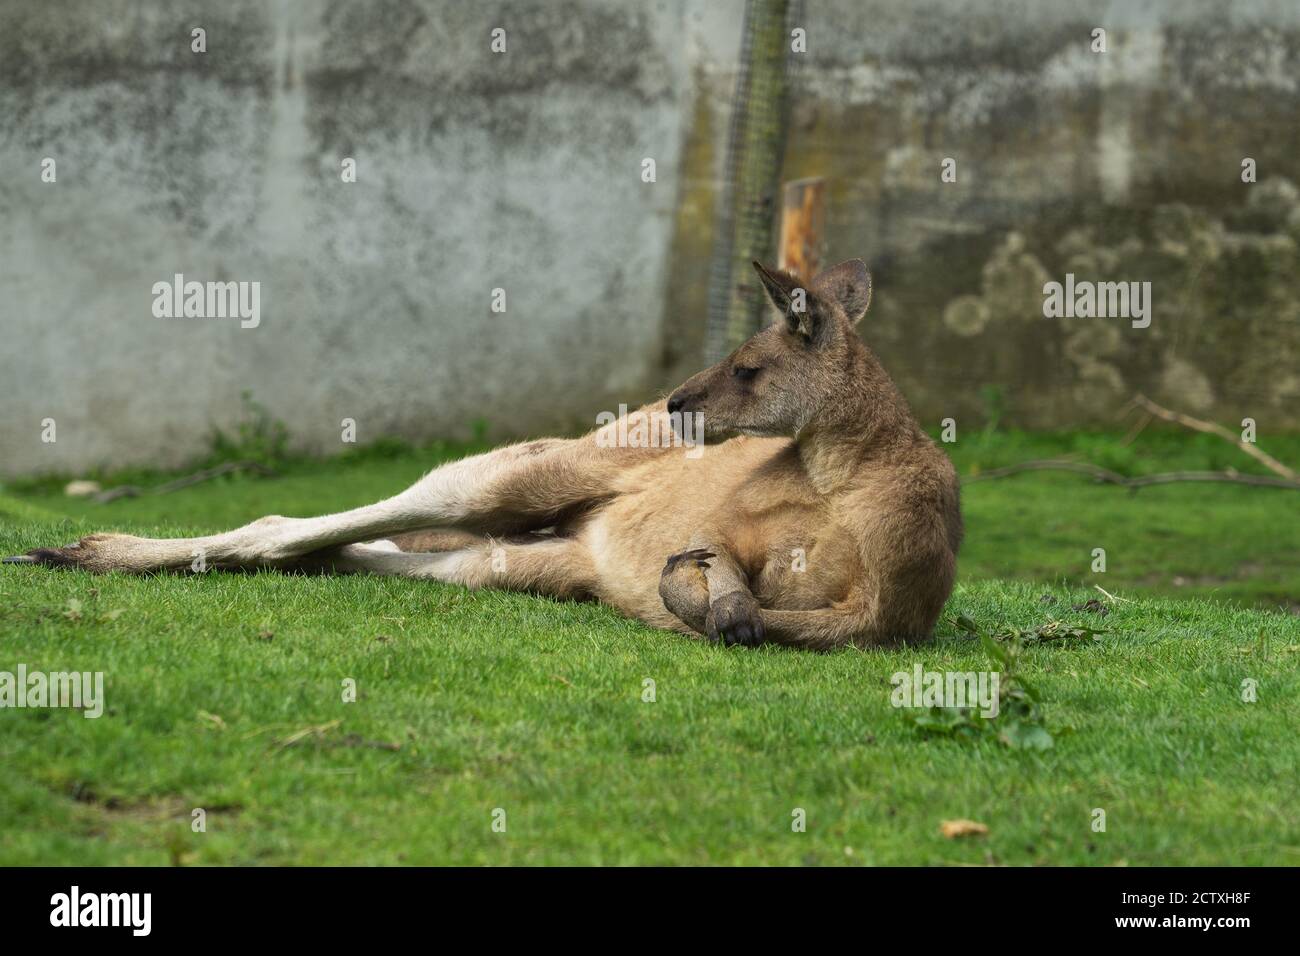 Il canguro maschile si trova sul suo lato, attraversando le gambe anteriori o le gambe anteriori come un uomo. Il canguro si trova sull'erba verde. Abitudini animali. Foto Stock